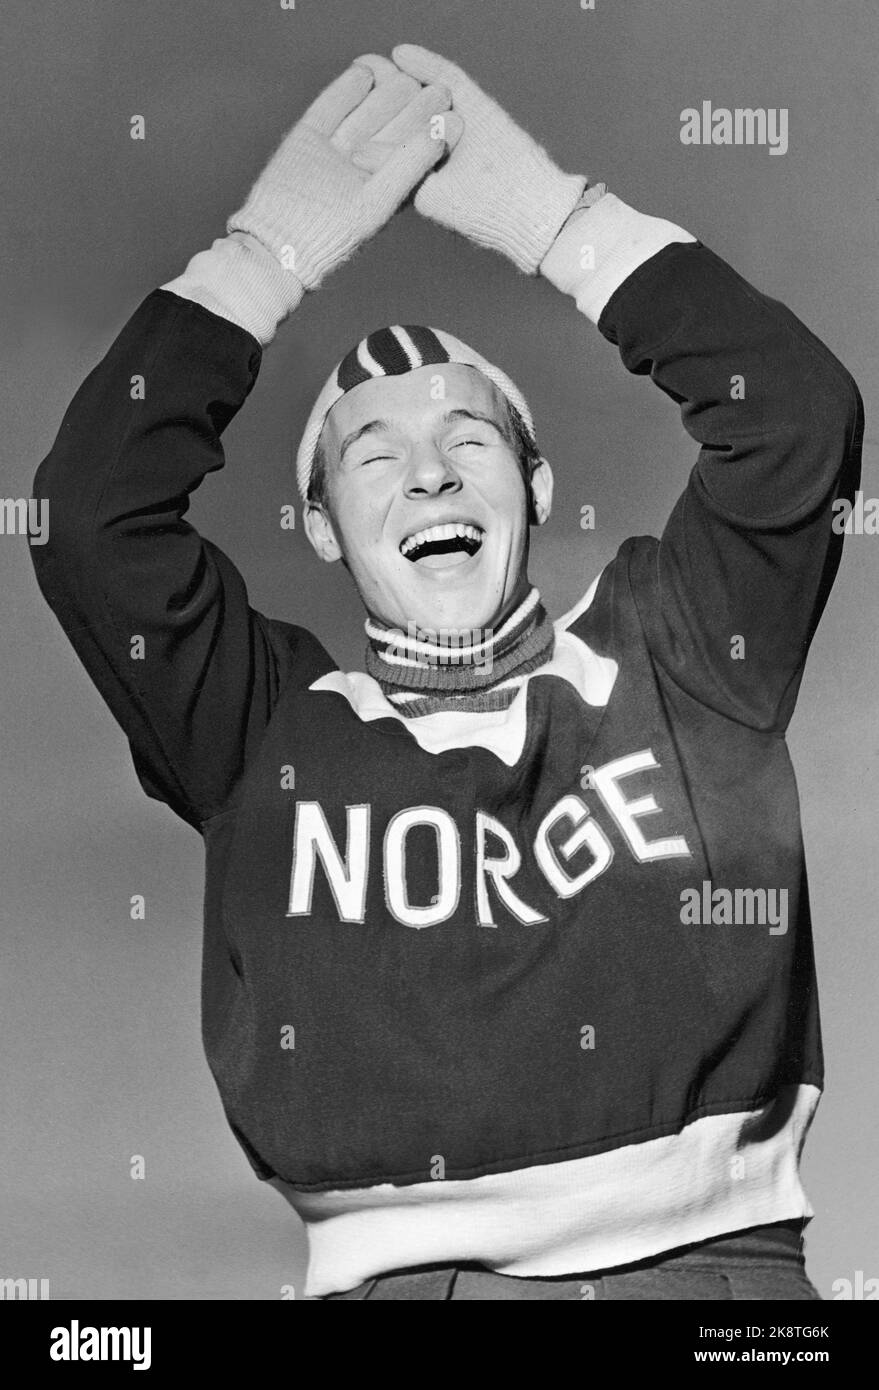 Oslo 1955. Il 21 Knut 'Kuppern' Johannesen ha fatto 'Hjallis-Sus' a Bislett quando ha finito 10.000 m nella partita internazionale contro i Paesi Bassi su 16.59.1. Il norvegese divenne il numero 2 in lontananza. Qui si rallegra per la vittoria. (Cheer) Foto: Aage Storløkken / corrente / NTB la foto viene nuovamente scansionata in versione grande Foto Stock